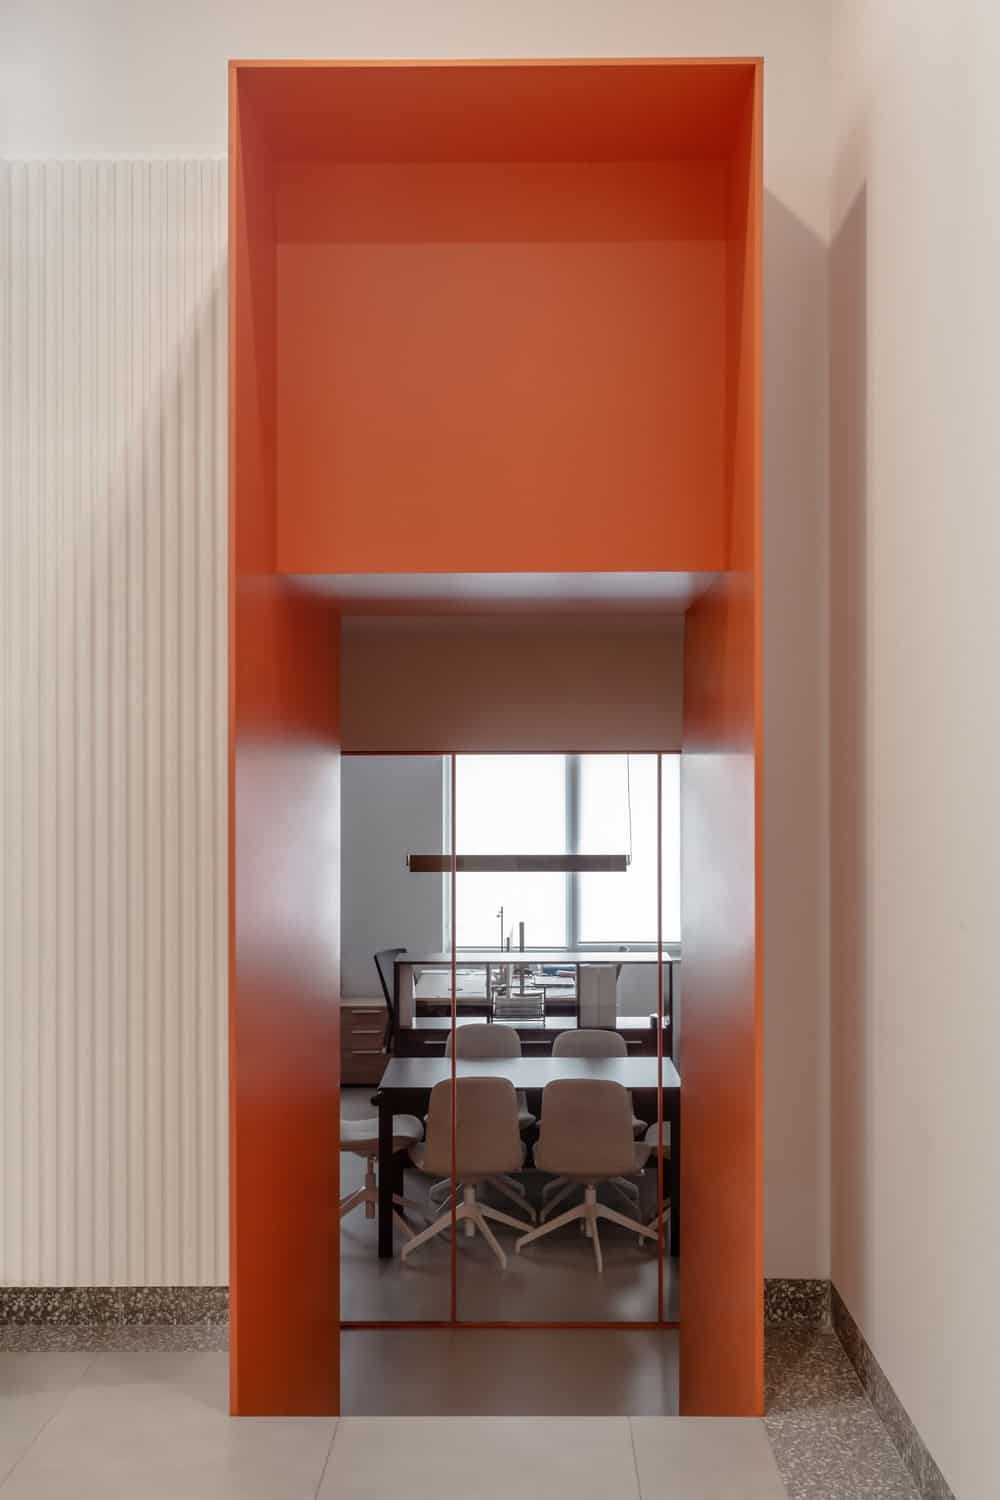 这是一个橙色的入口通道，通向更多的办公空间，远处有大型木制会议桌和办公桌。